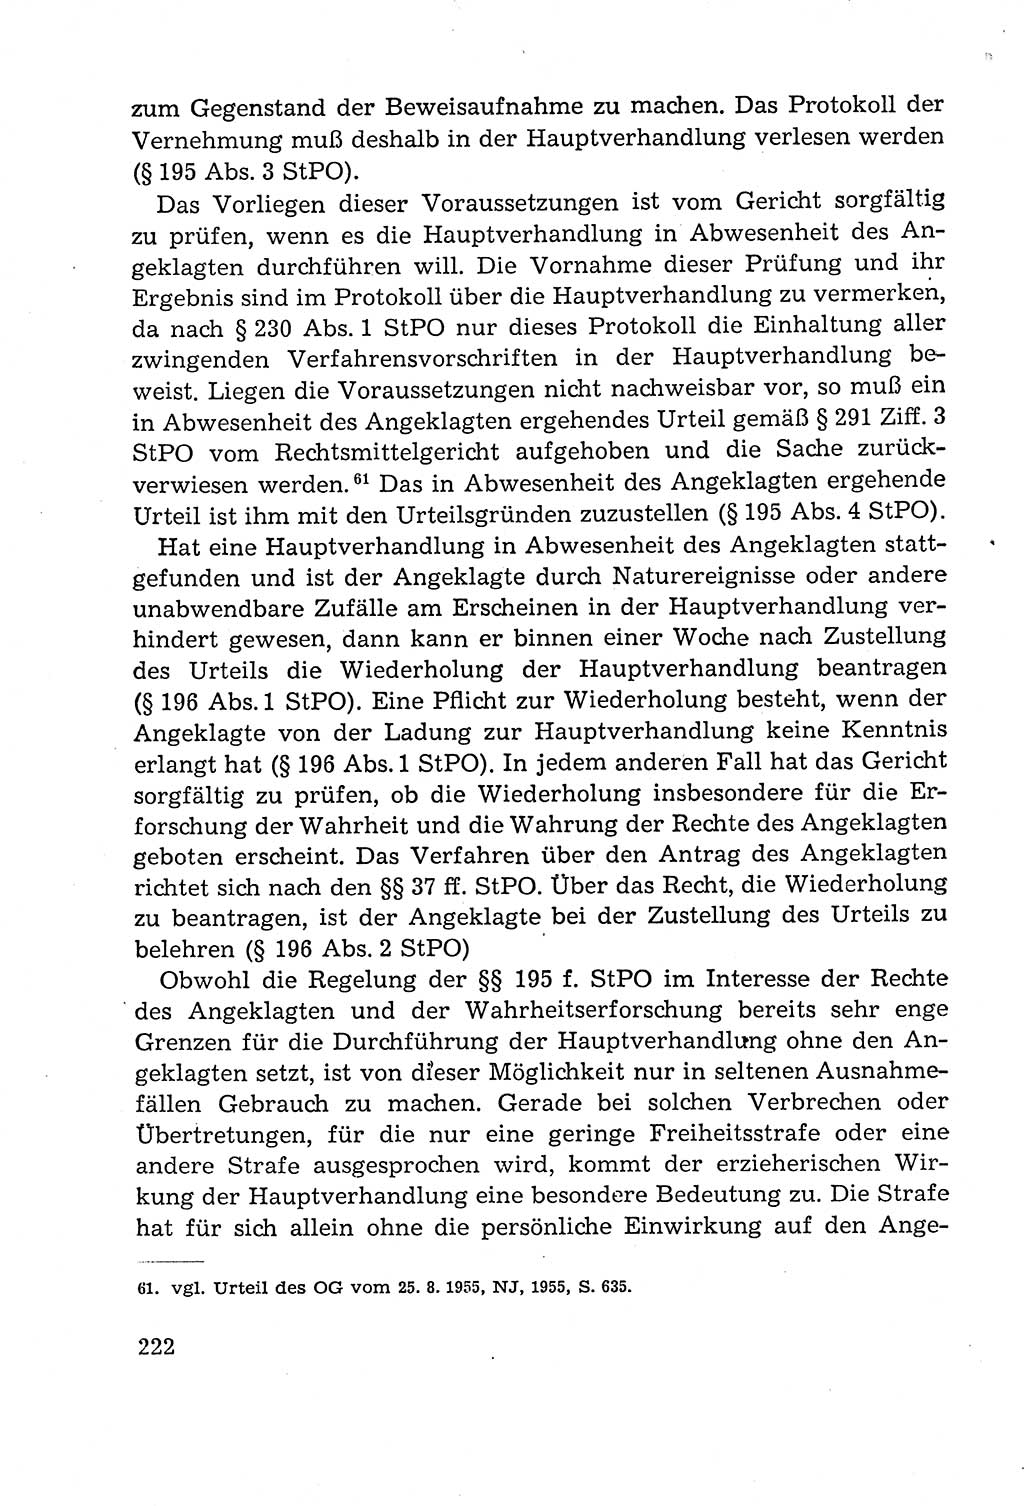 Leitfaden des Strafprozeßrechts der Deutschen Demokratischen Republik (DDR) 1959, Seite 222 (LF StPR DDR 1959, S. 222)